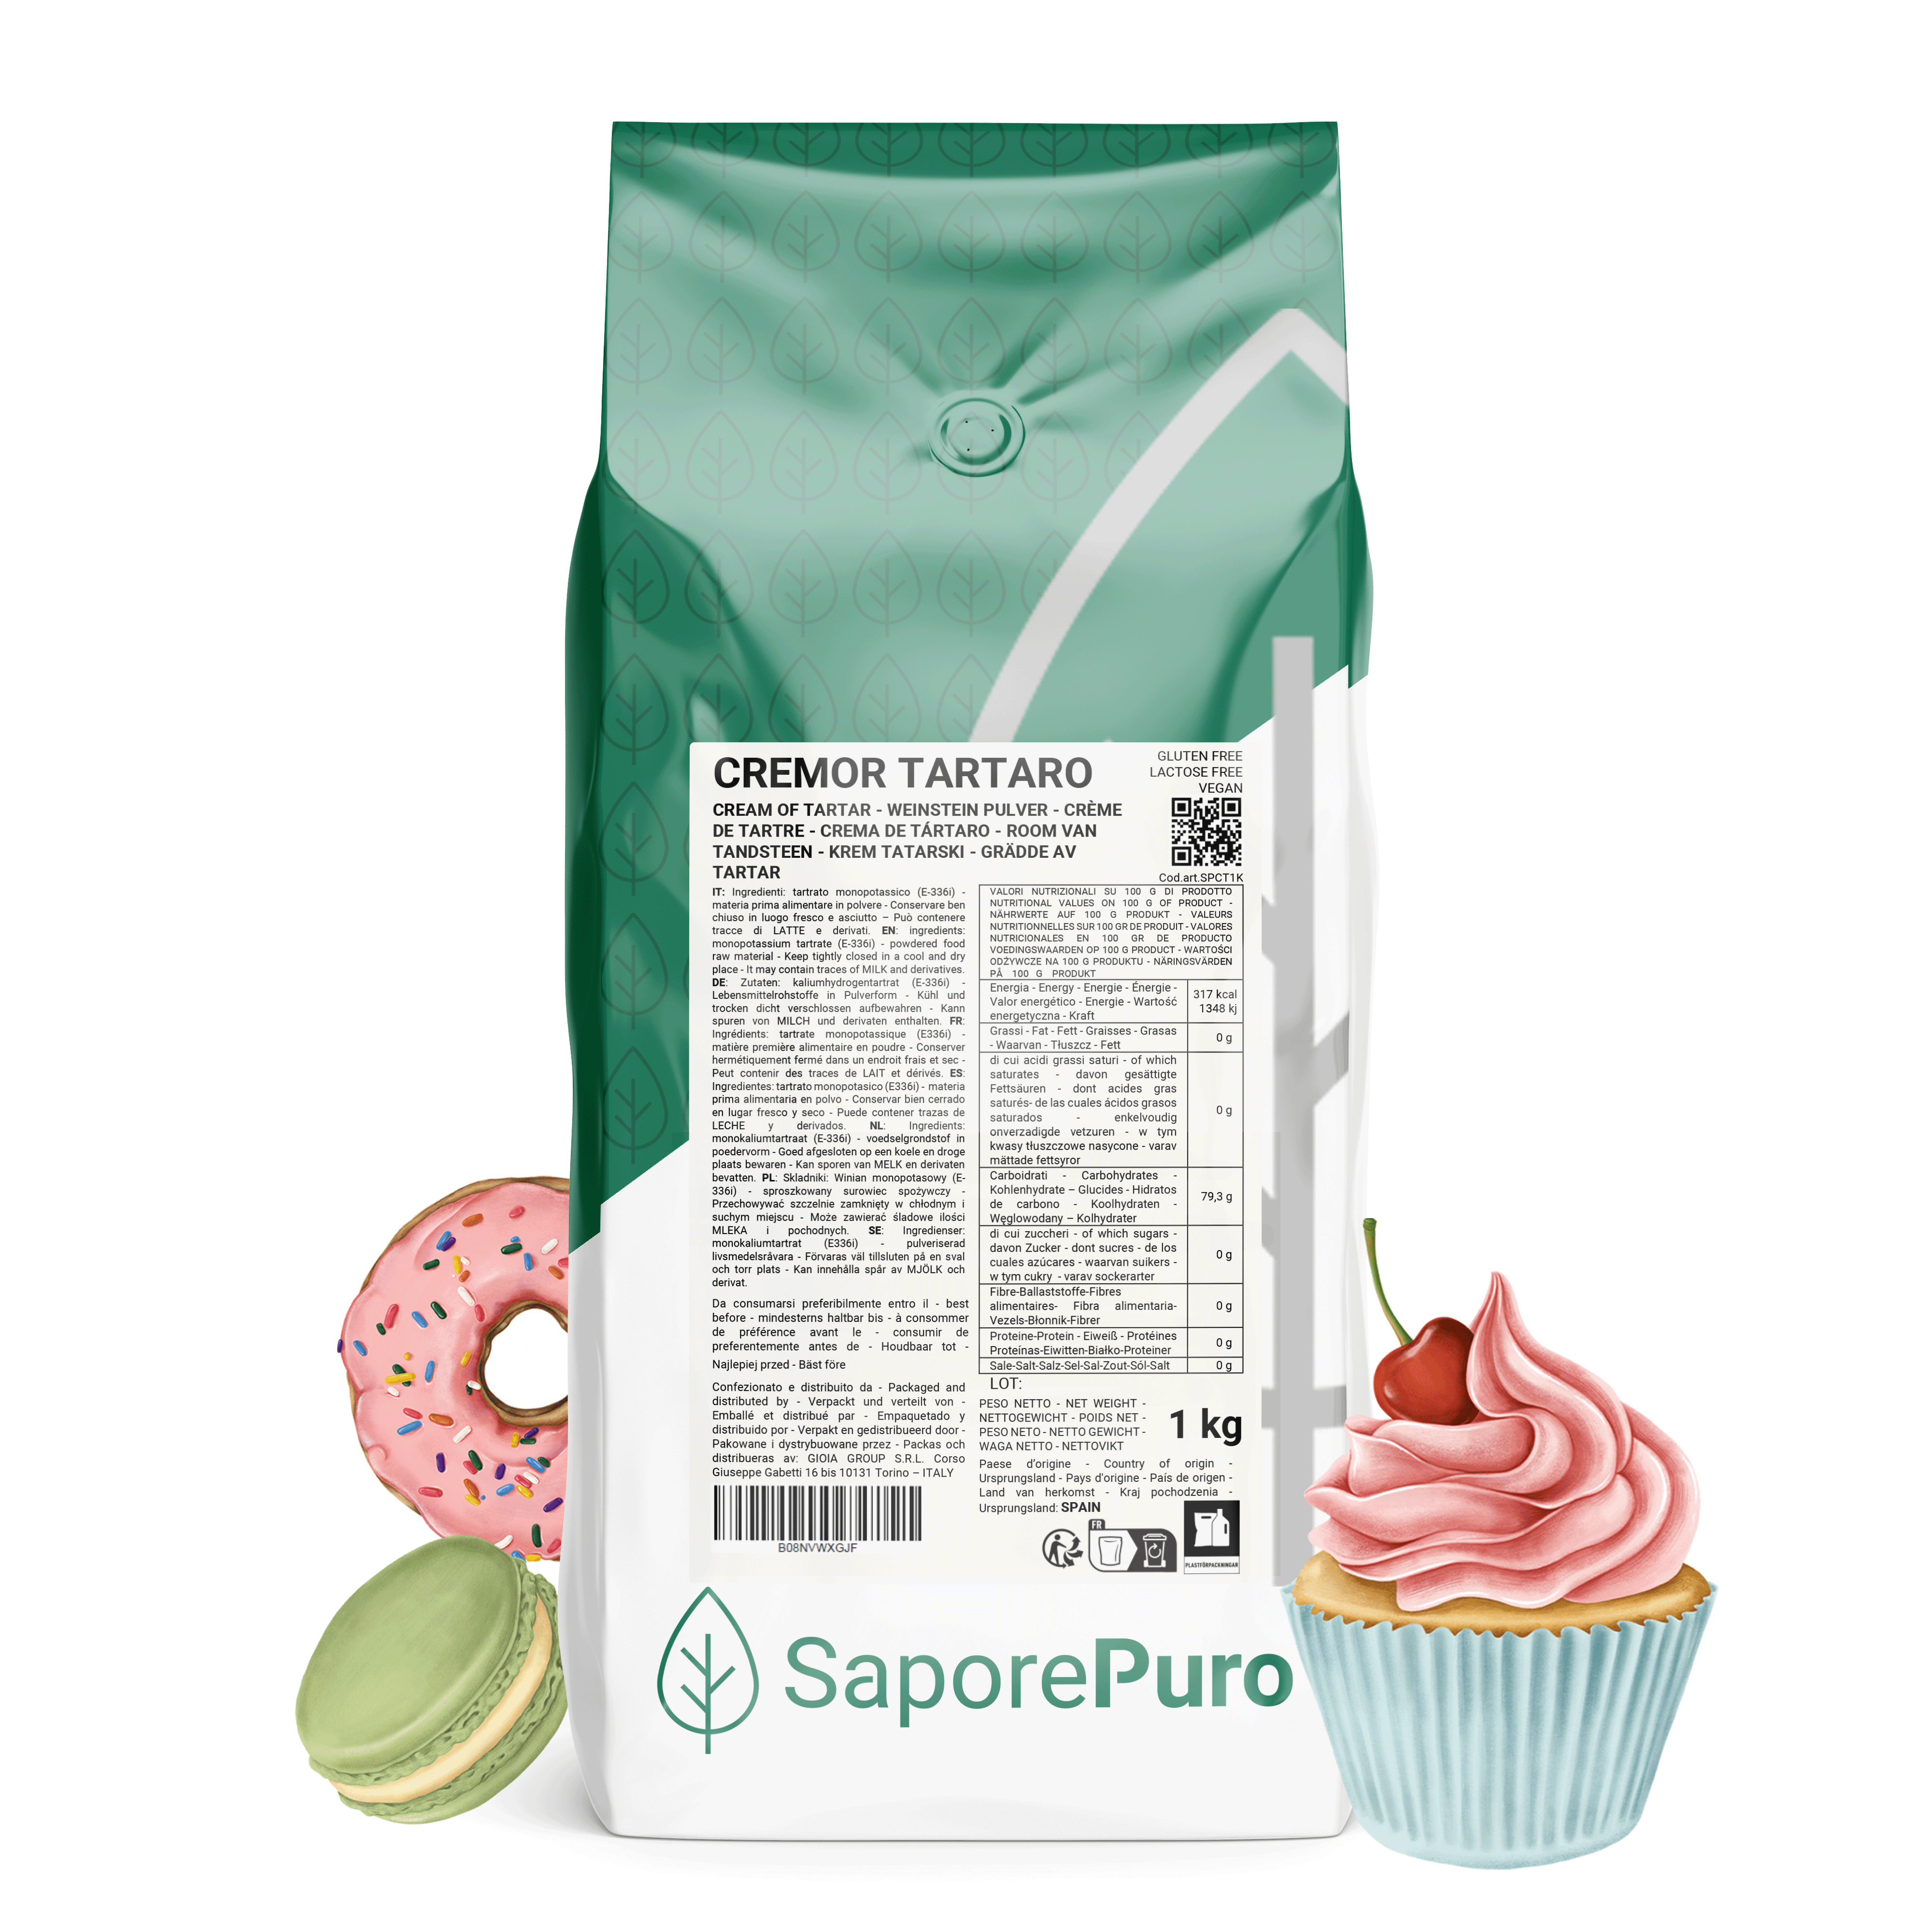 Crema de tártaro - 1kg - SaporePuro